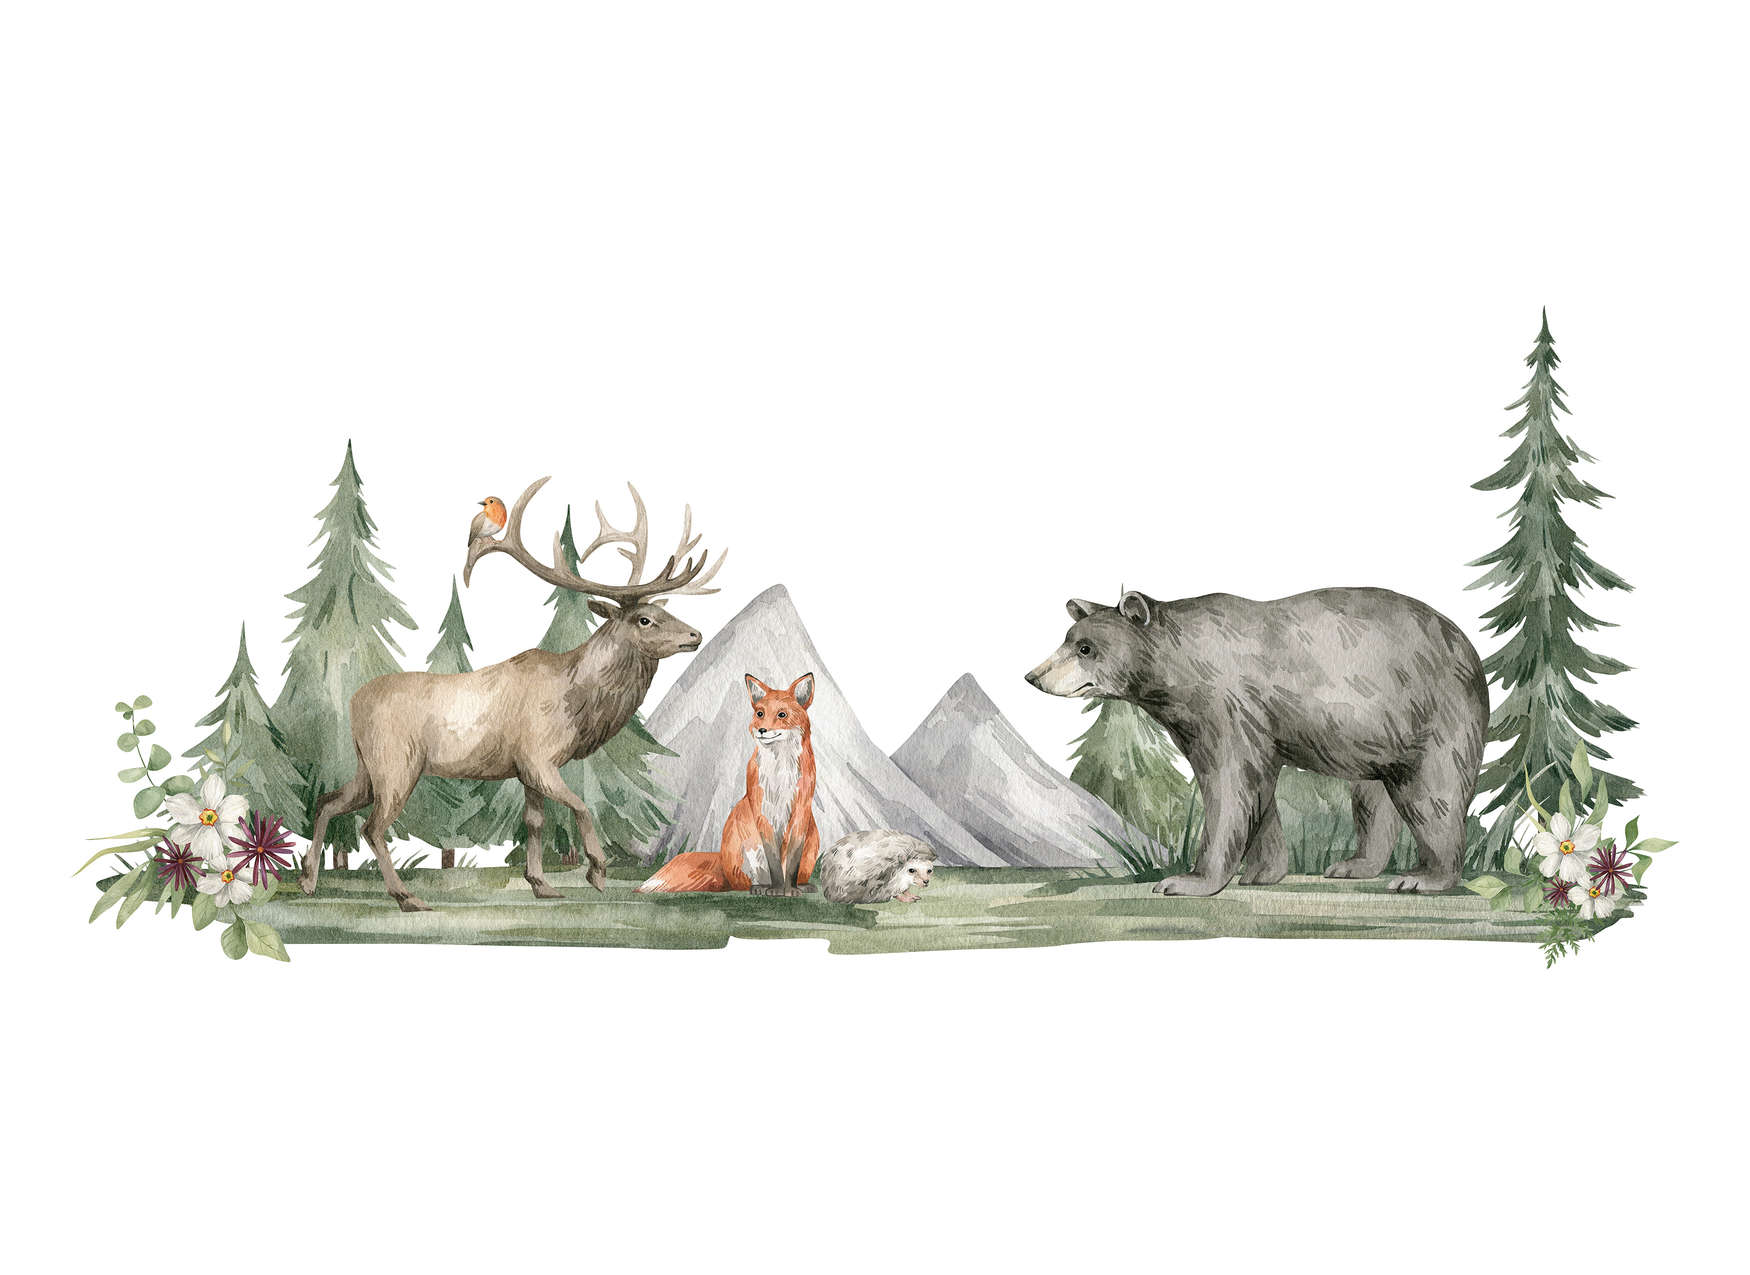             Papier peint panoramique chambre d'enfant avec des animaux dans la forêt - vert, marron, blanc
        